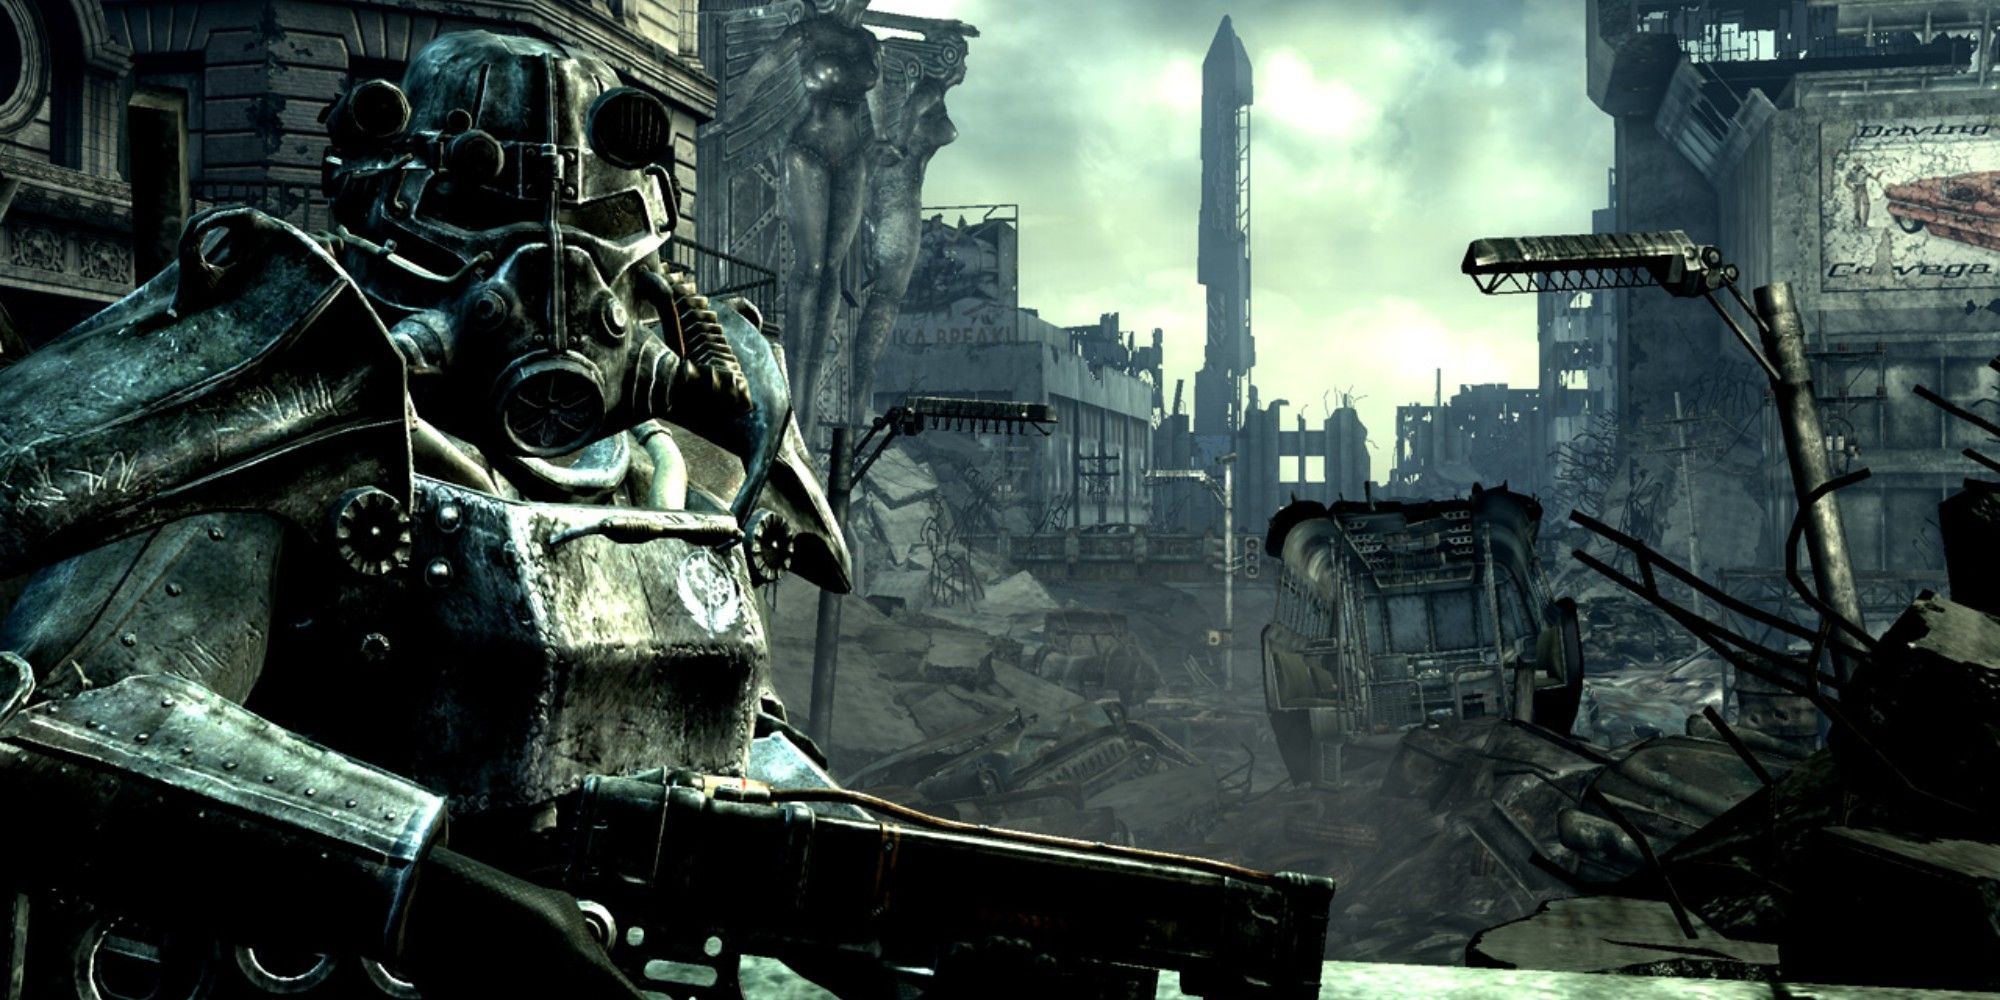 Fallout_3_PA intro scene